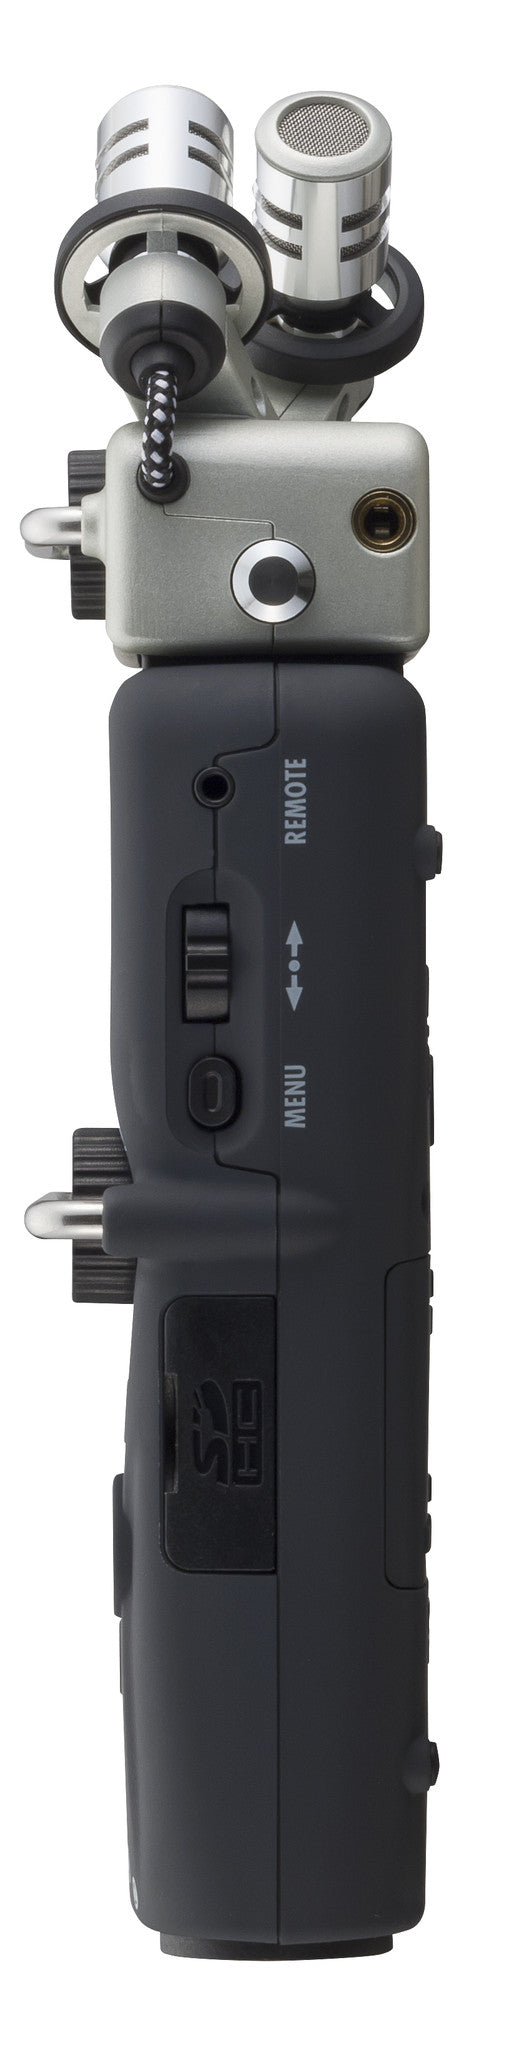 Zoom H5 Handy Recorder, video audio microphones & recorders, Zoom - Pictureline  - 7